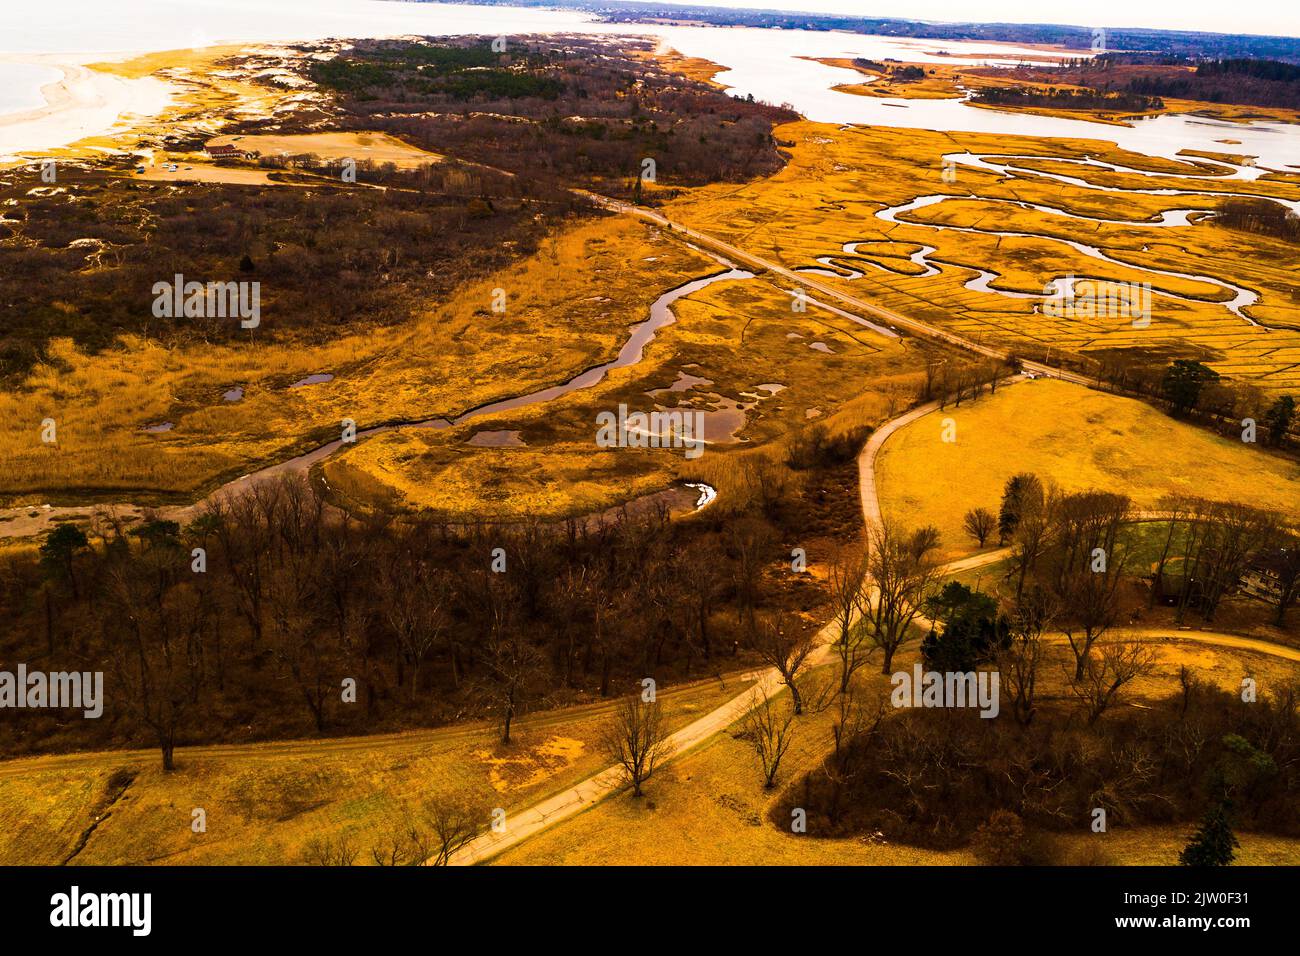 Aerial view of State Crane , Ipswich Massachusetts Stock Photo